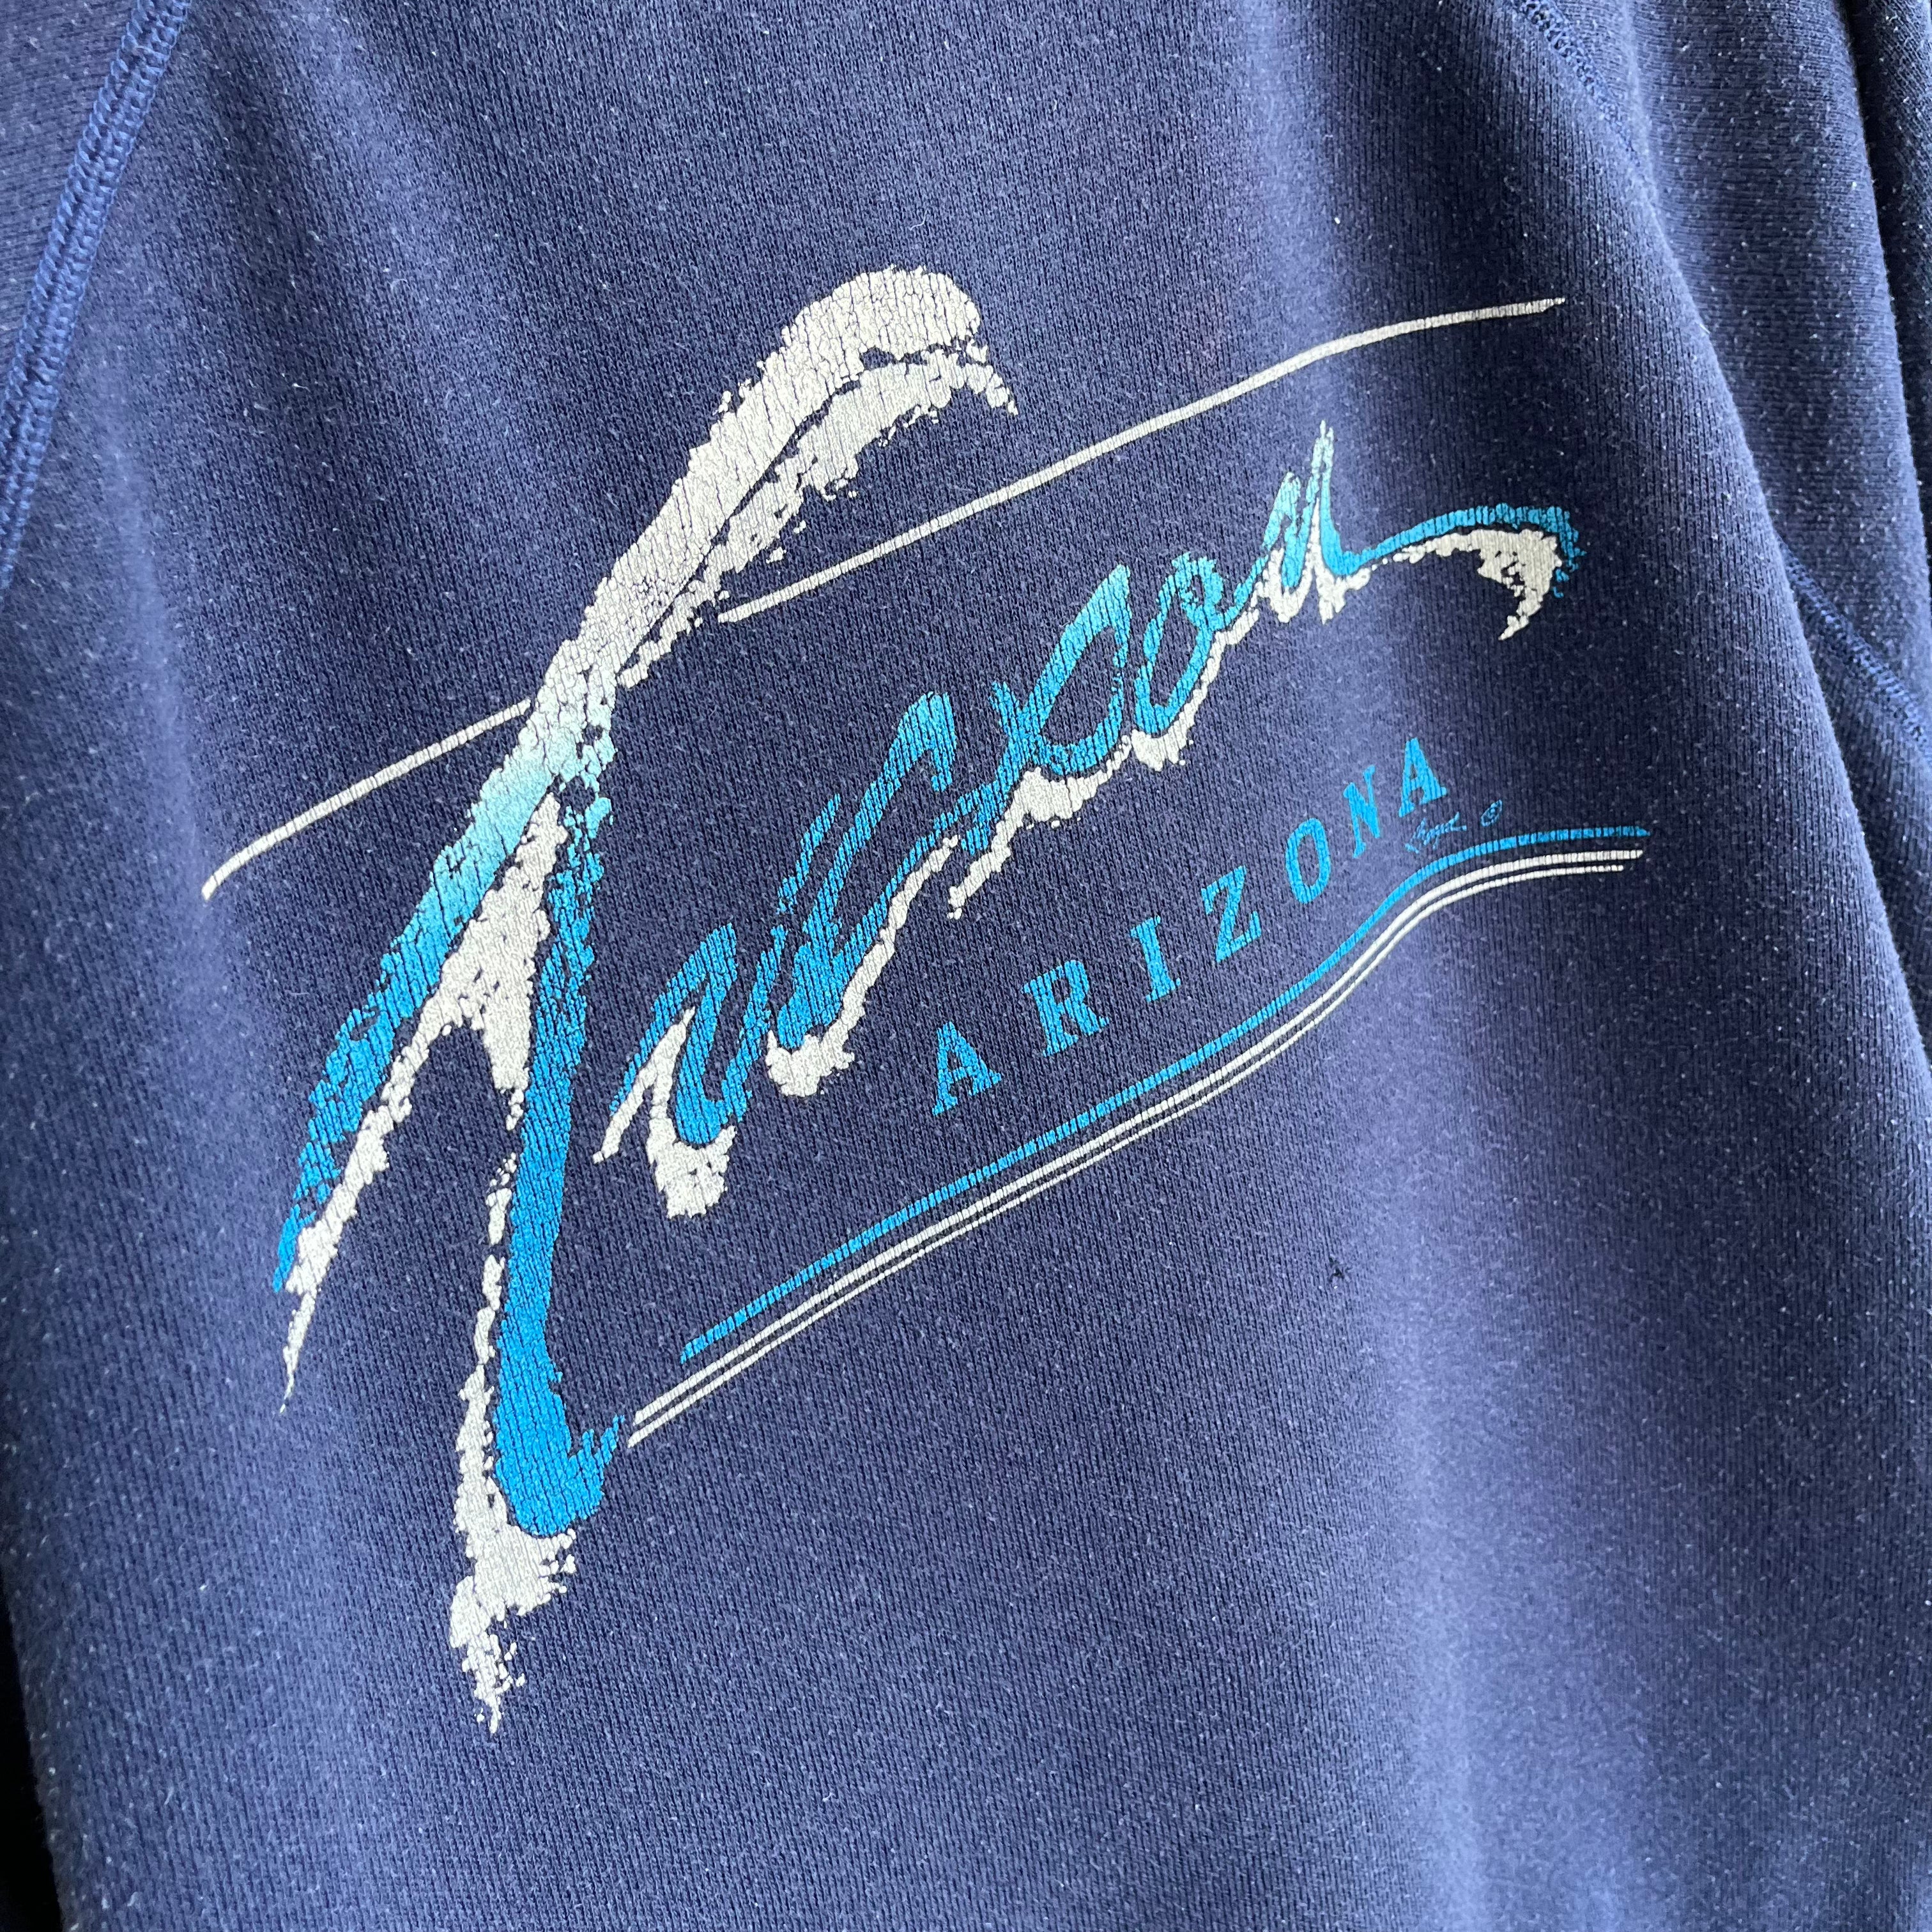 1980s Tucson, Arizona Sweatshirt